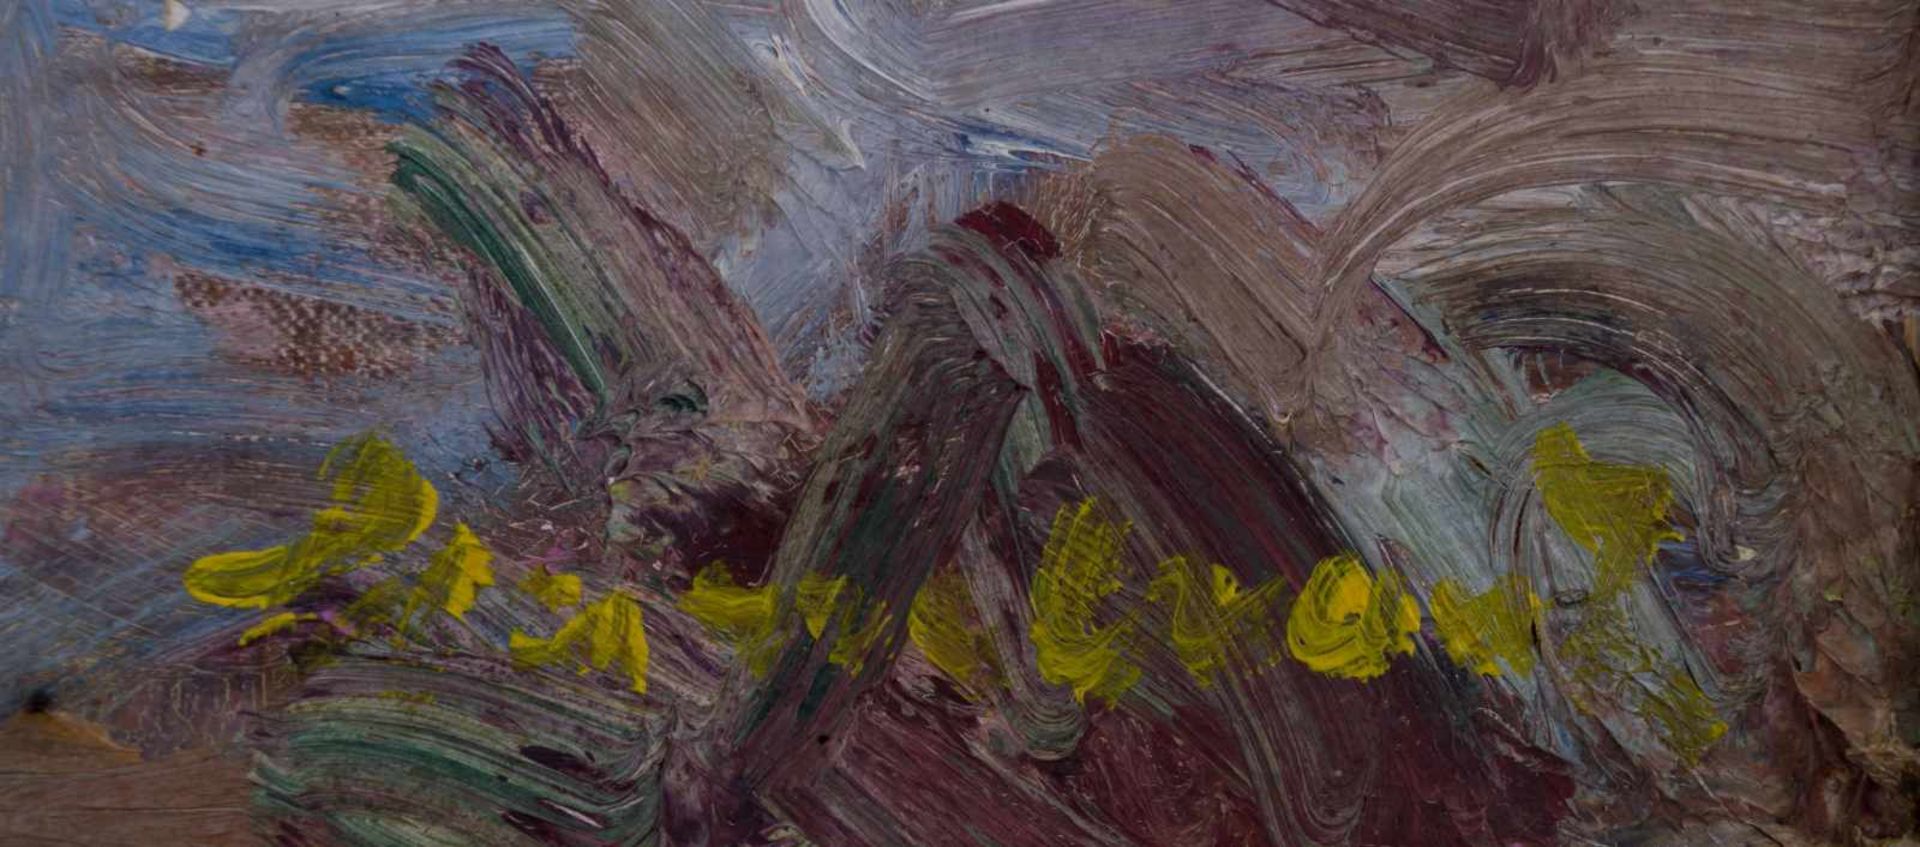 Ernst HASSEBRAUK (1905-1974) "Stillleben mit Tulpen" Gemälde Öl/Leinwand, 46,5 cm x 55 cm, rechts - Bild 7 aus 8